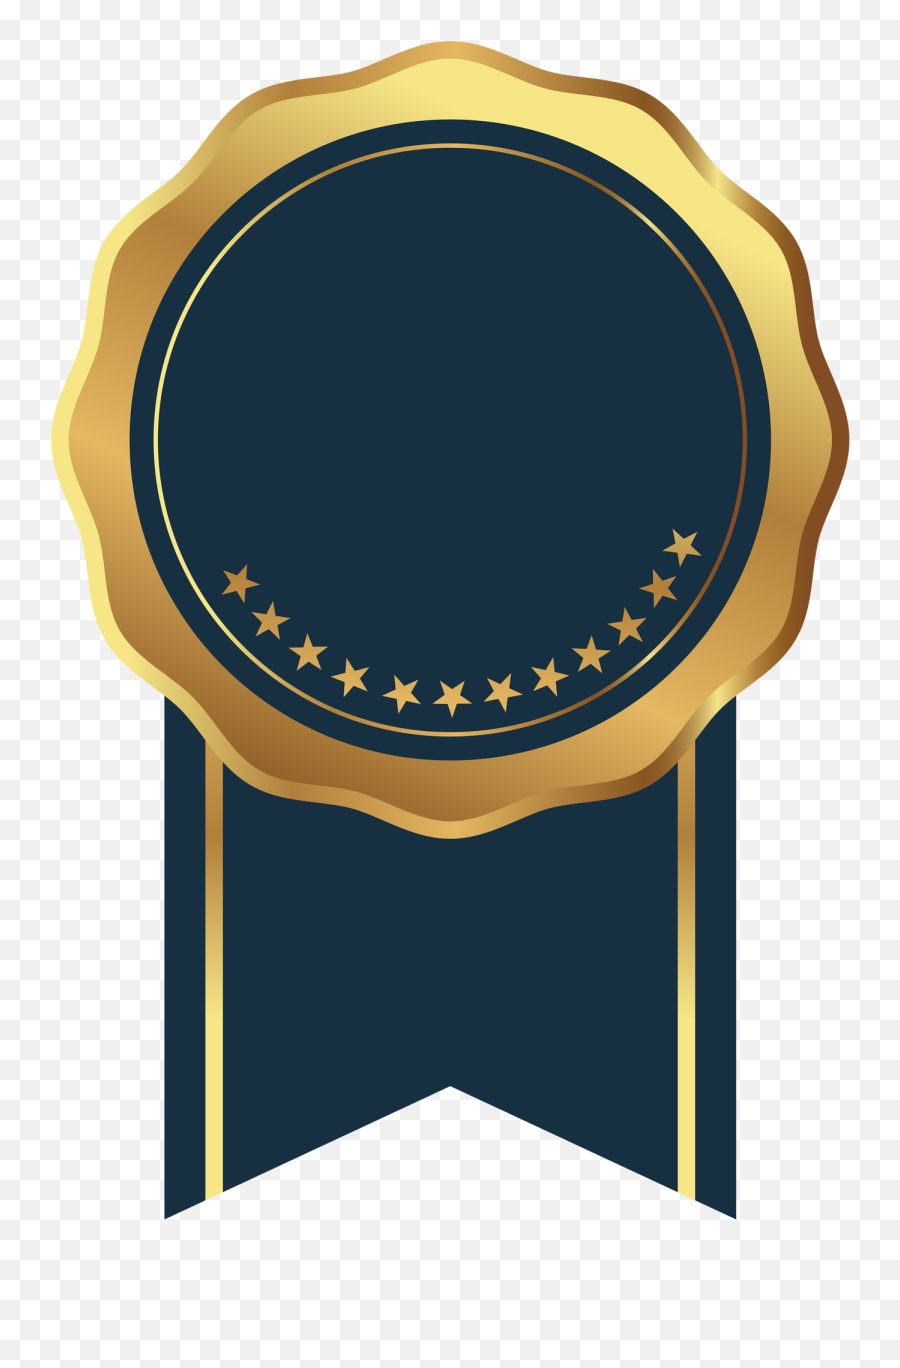 Pin De Emily Paker Em Premios Em 2020 - Red Gold Badge Png Emoji,Elephant Silhouette Png